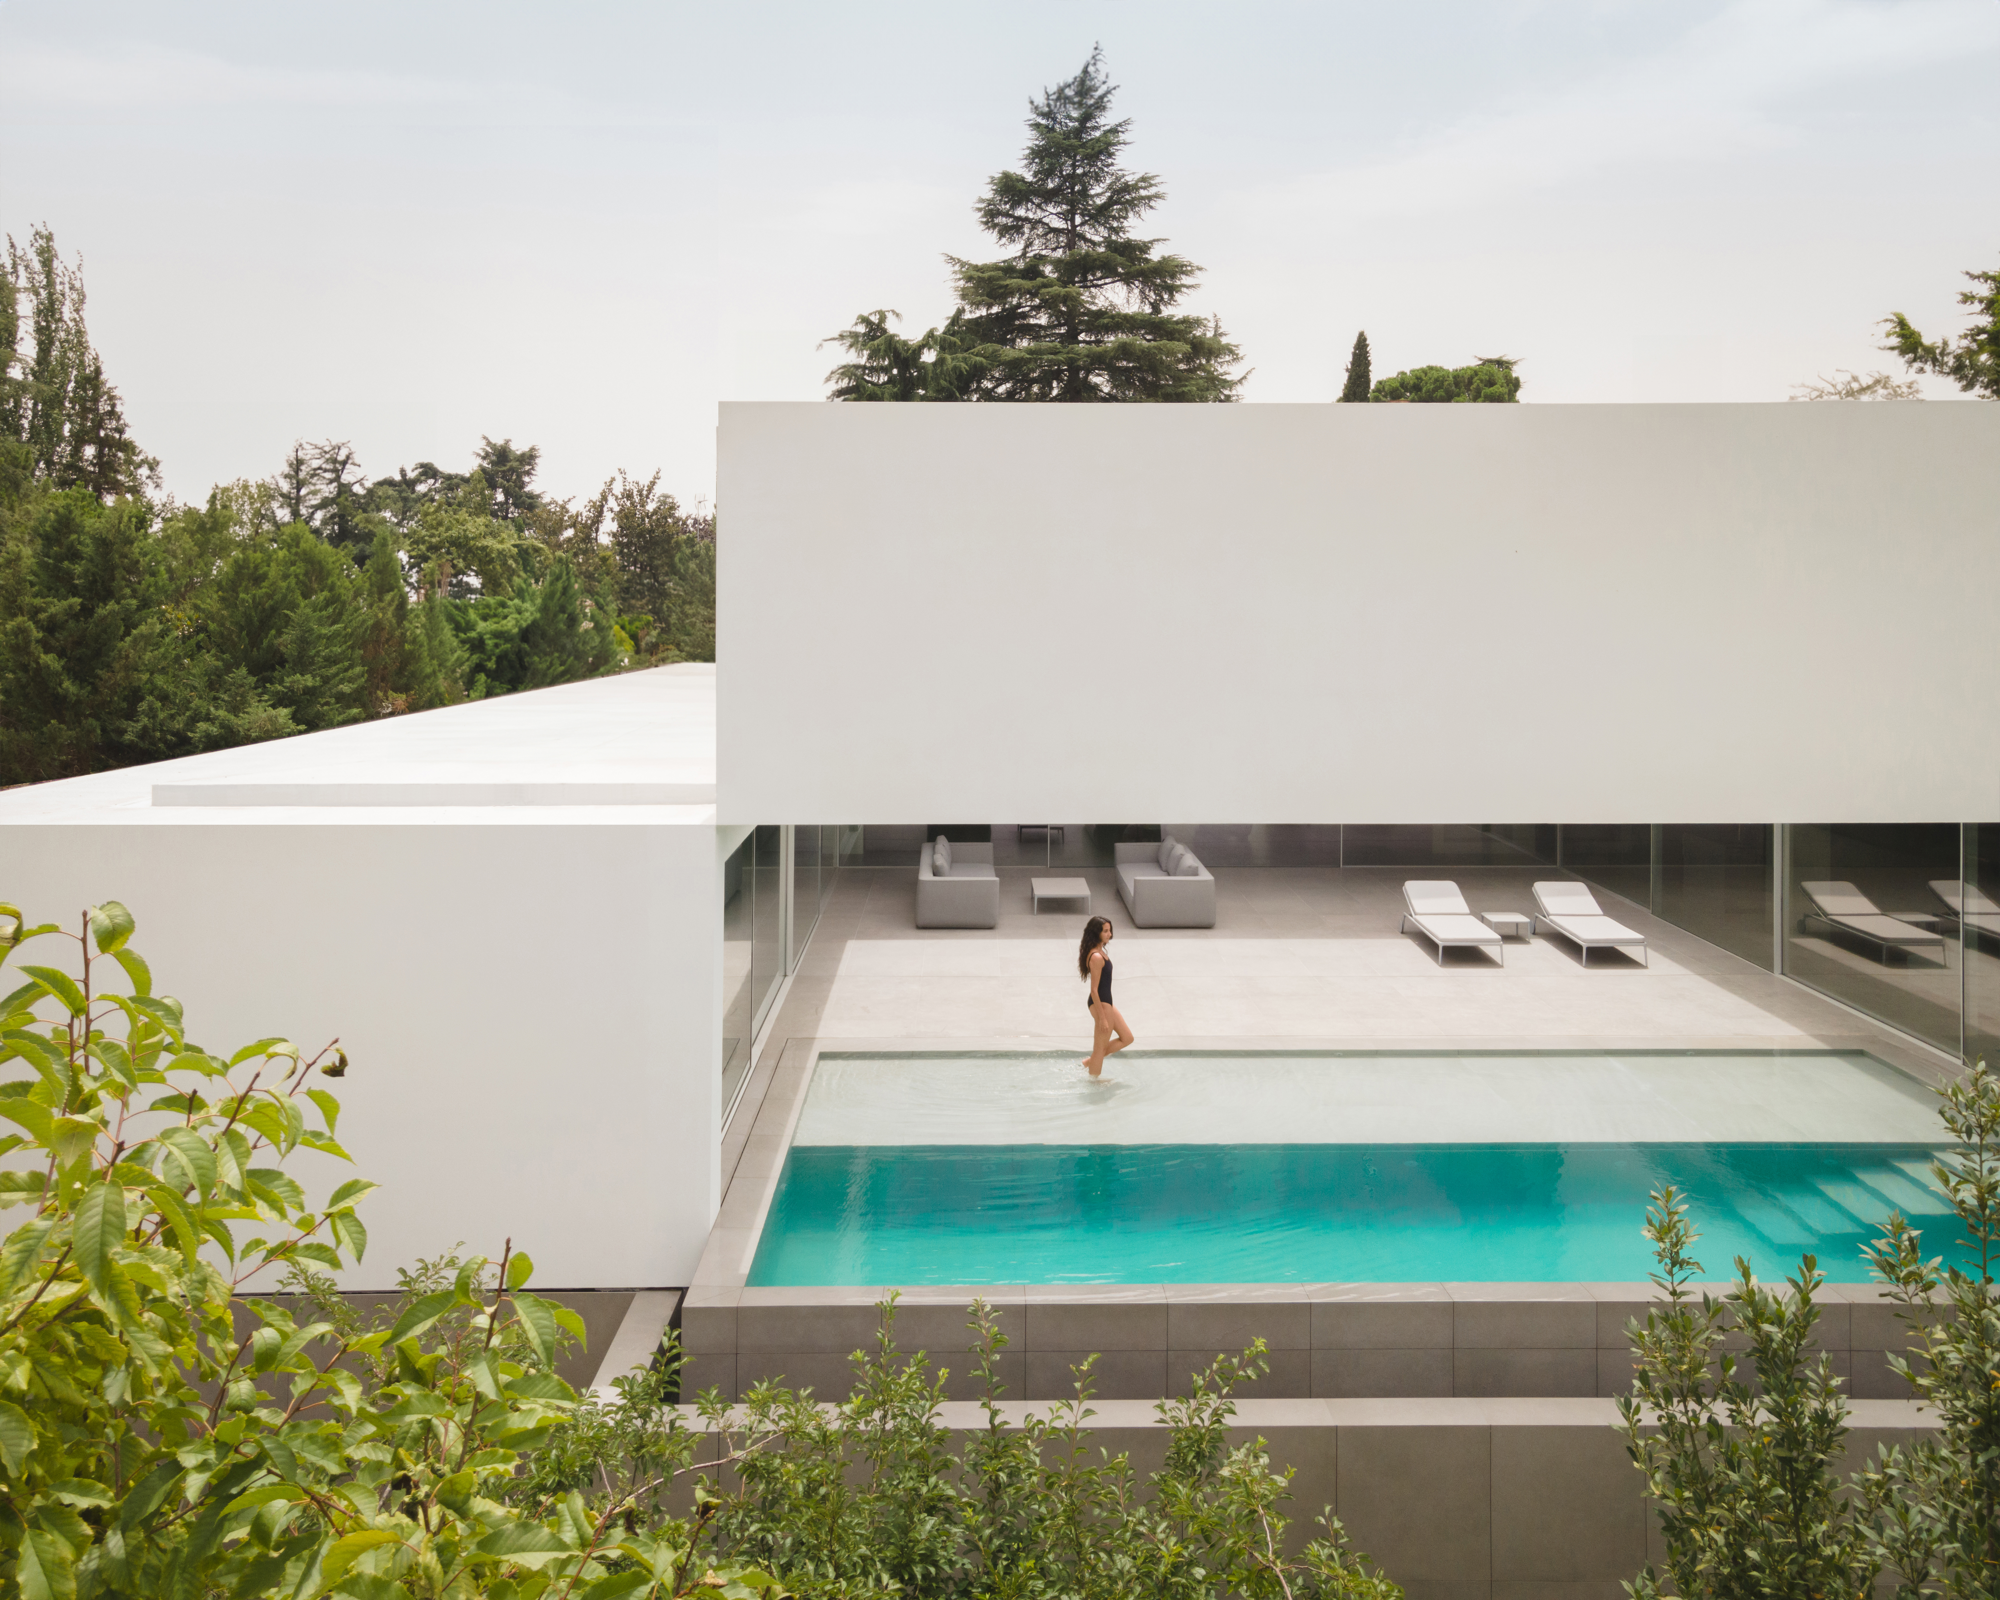 Las casas de Fran Silvestre destacan por sus volúmenes geométricos y la relación de los espacios entre sí y con el exterior.